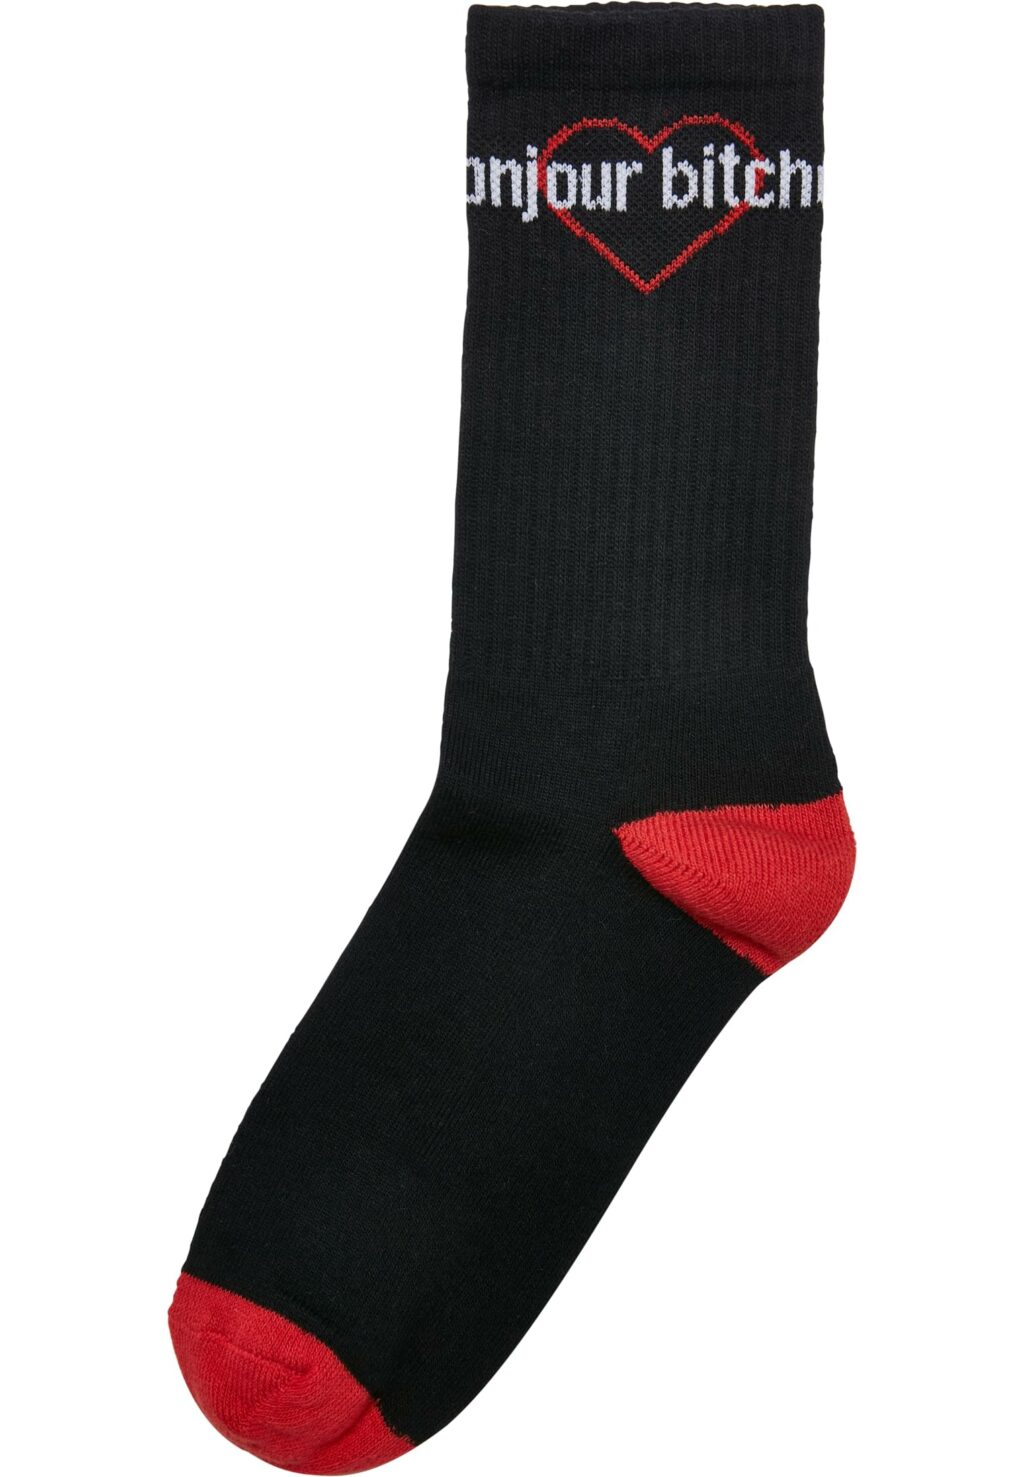 Bonjour Bitches Socks 3-Pack black/white/red MT2317